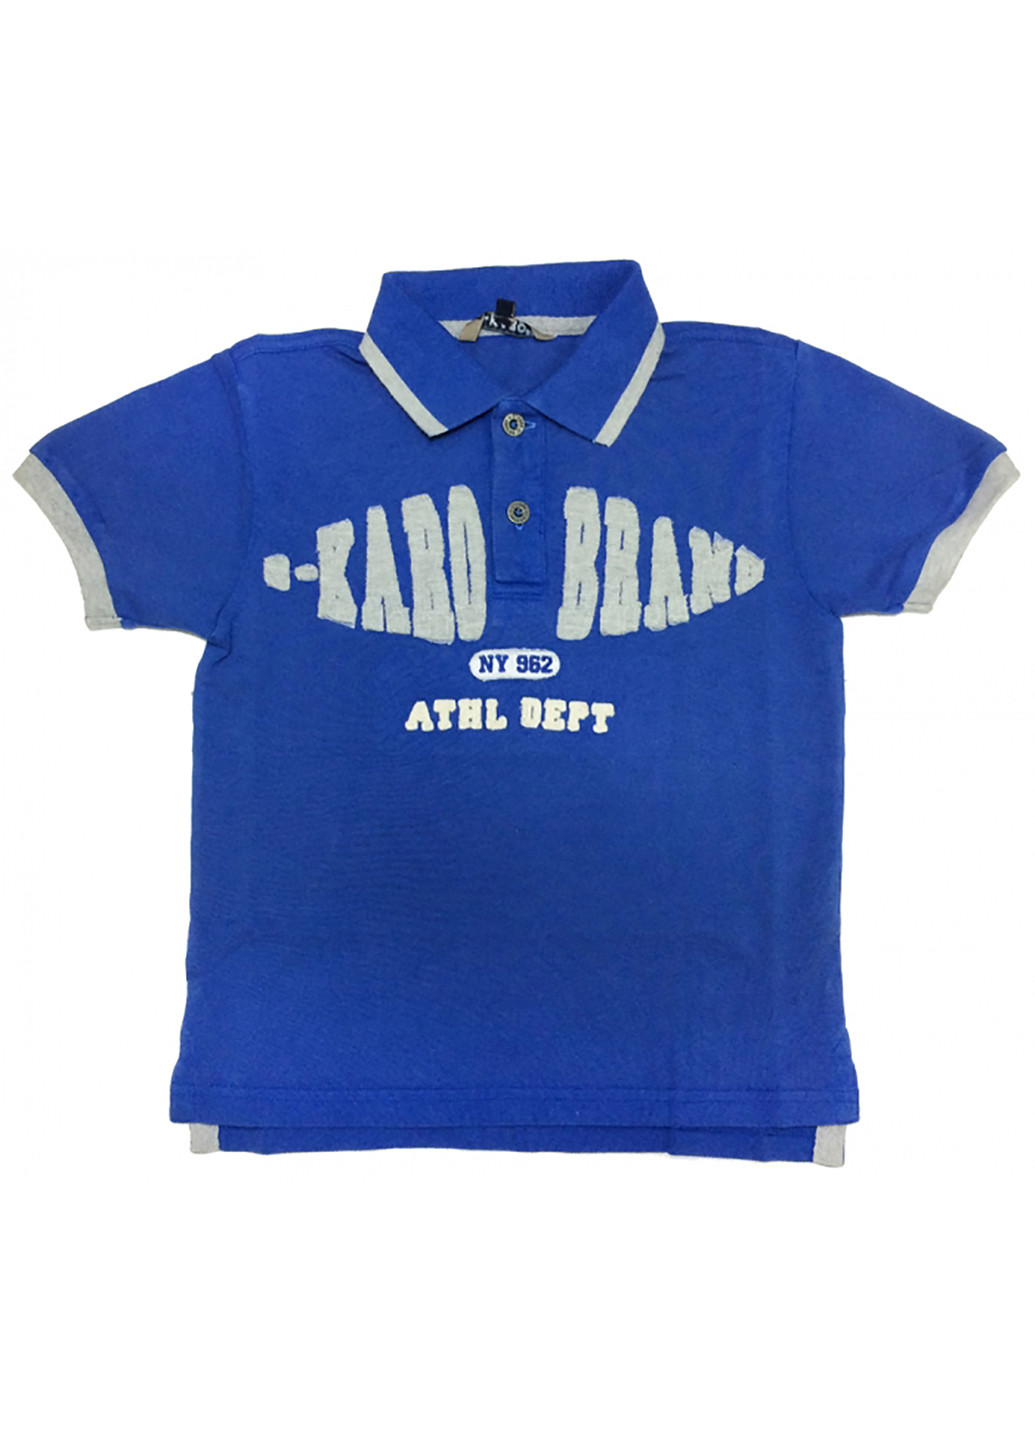 Синяя детская футболка-поло для мальчика B-Karo с надписью